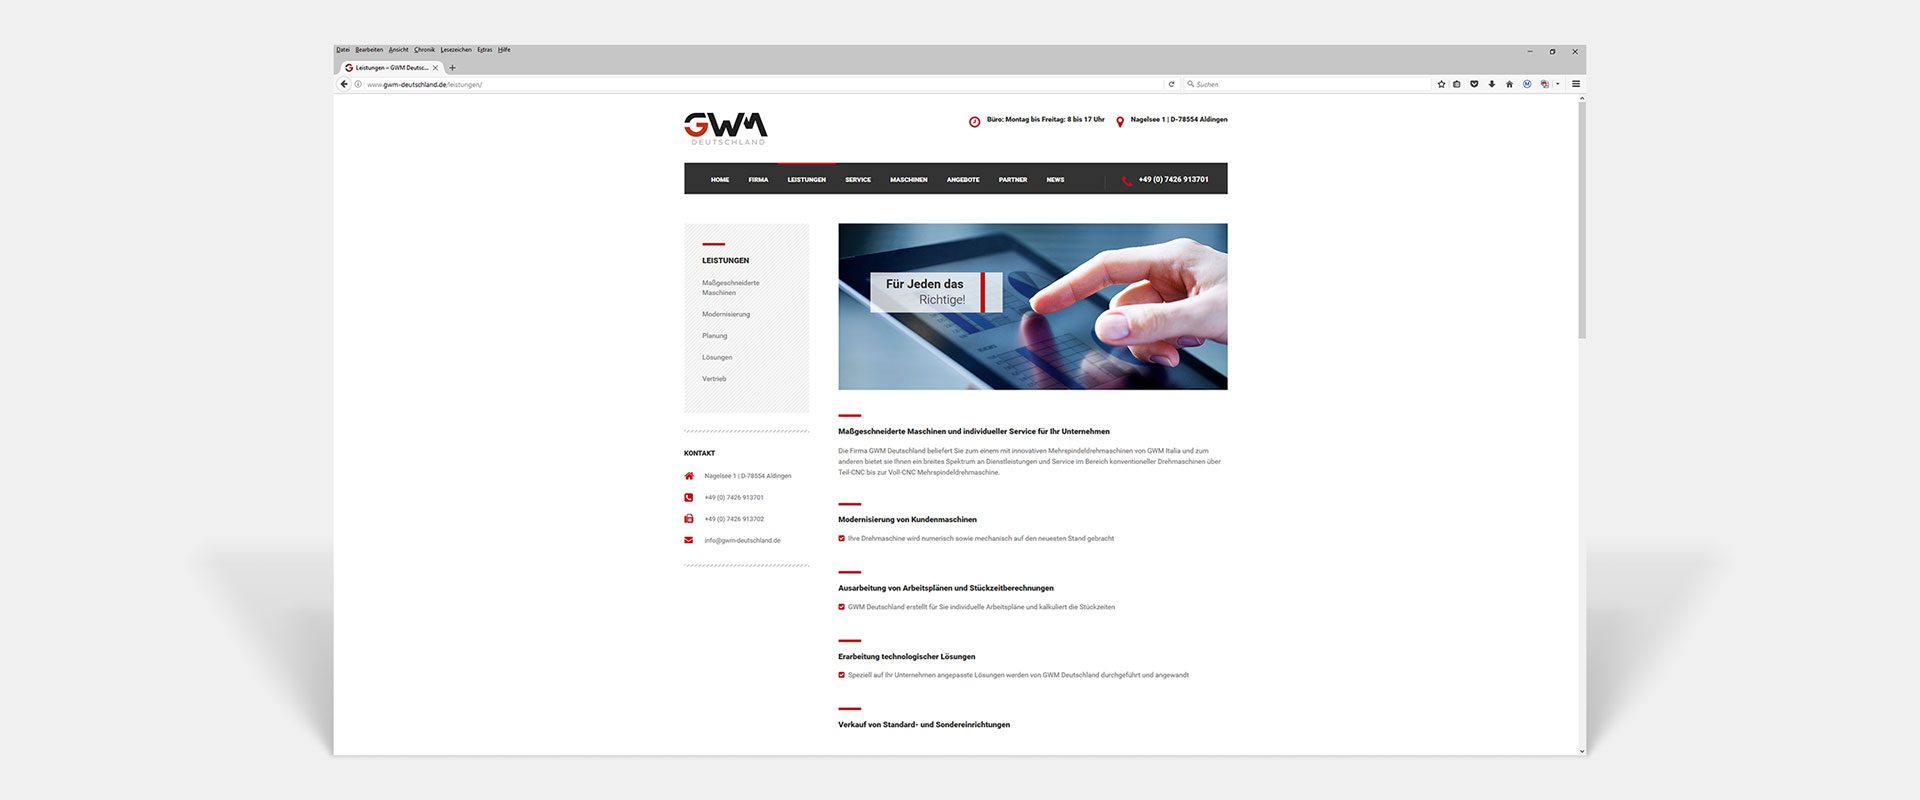 GWM Deutschland GmbH Responsive Website Leistungen by Hirschburg Werbeagentur